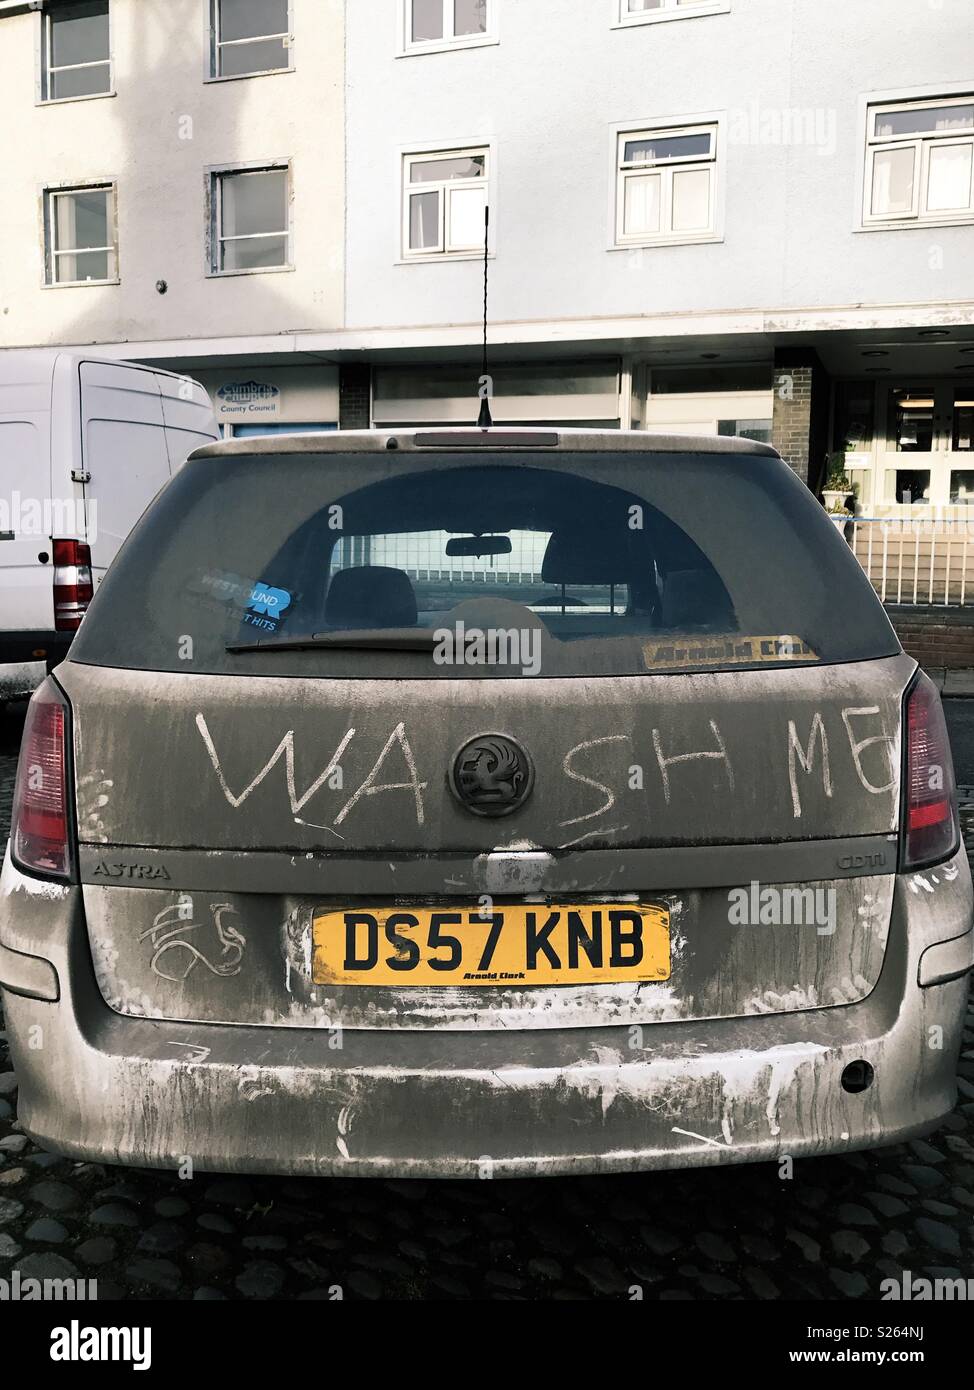 Ein verschmutztes Auto in Northumberland, England. Jemand hat wasche mich in den Schmutz auf der Rückseite des Fahrzeugs geschrieben. Stockfoto